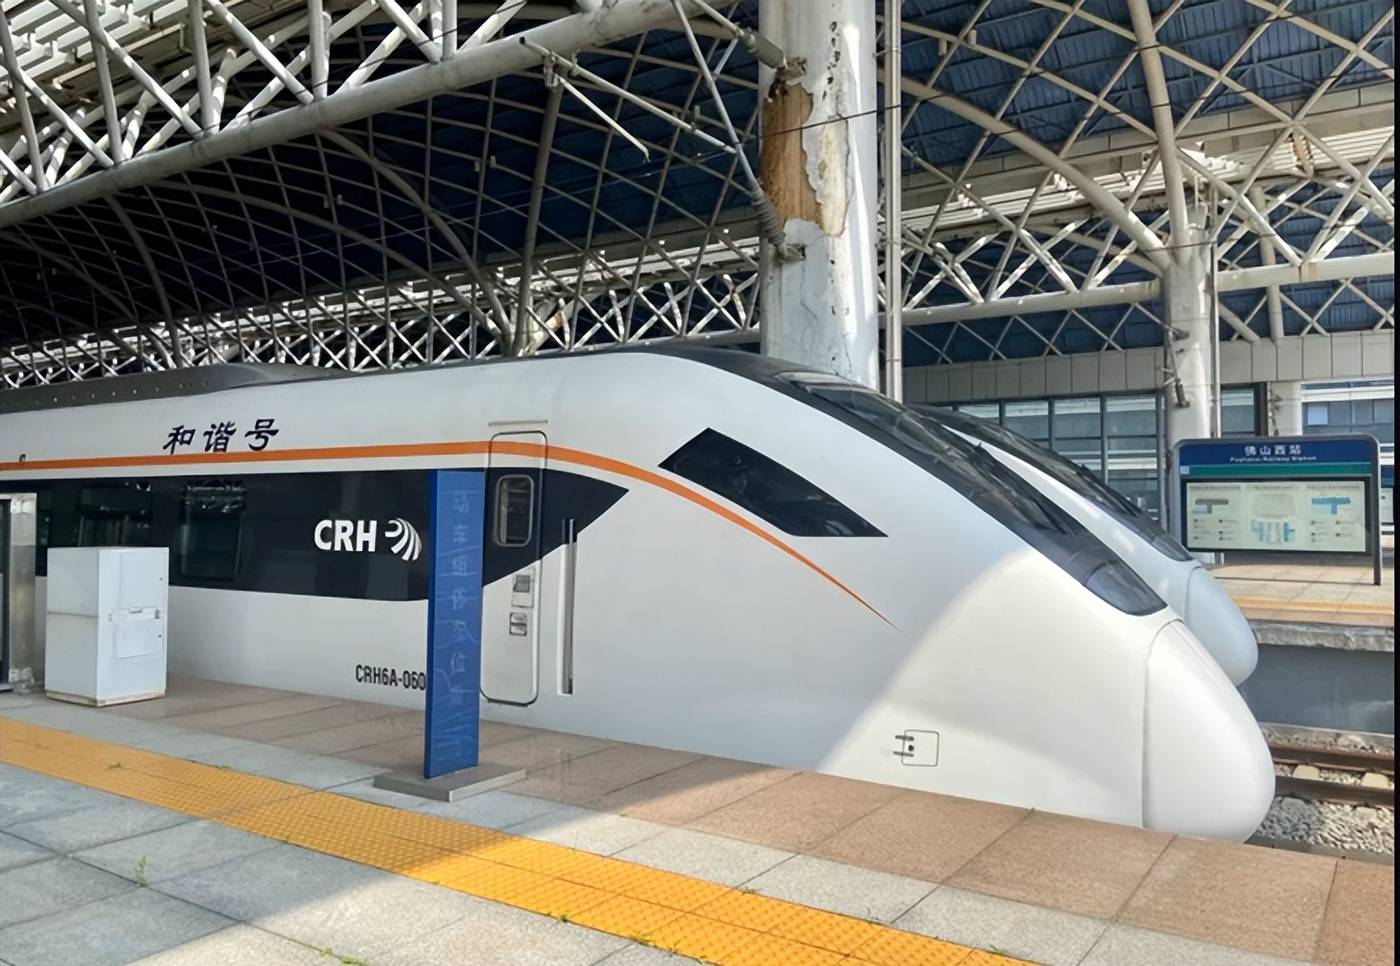 据介绍,广东城际铁路将广佛肇莞惠五个城市连成一线,形成一条全长258